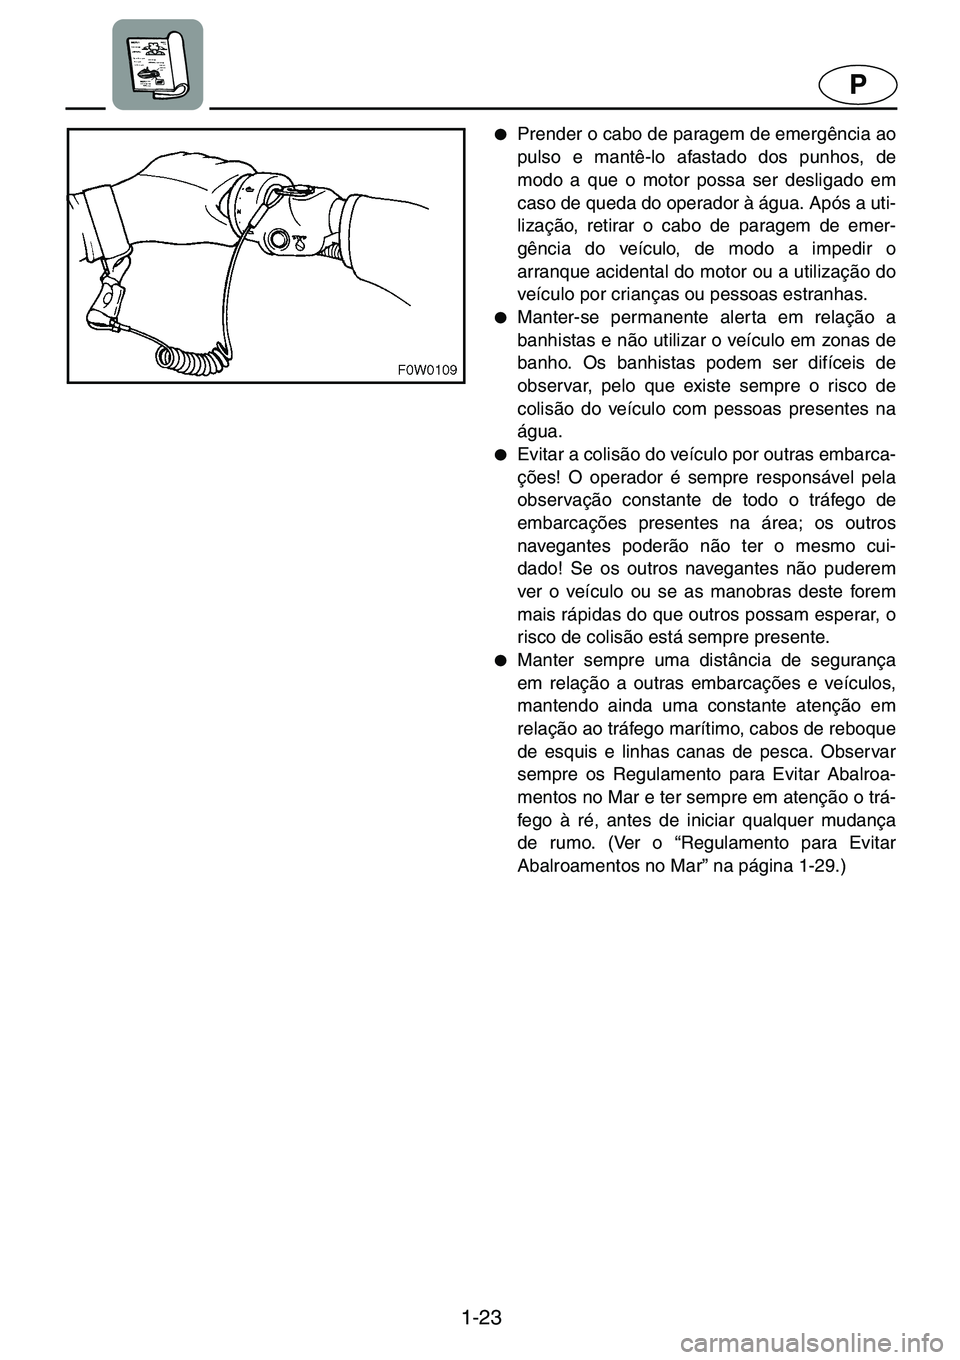 YAMAHA GP1200 2001  Manual de utilização (in Portuguese) 1-23
P
●Prender o cabo de paragem de emergência ao
pulso e mantê-lo afastado dos punhos, de
modo a que o motor possa ser desligado em
caso de queda do operador à água. Após a uti-
lização, re